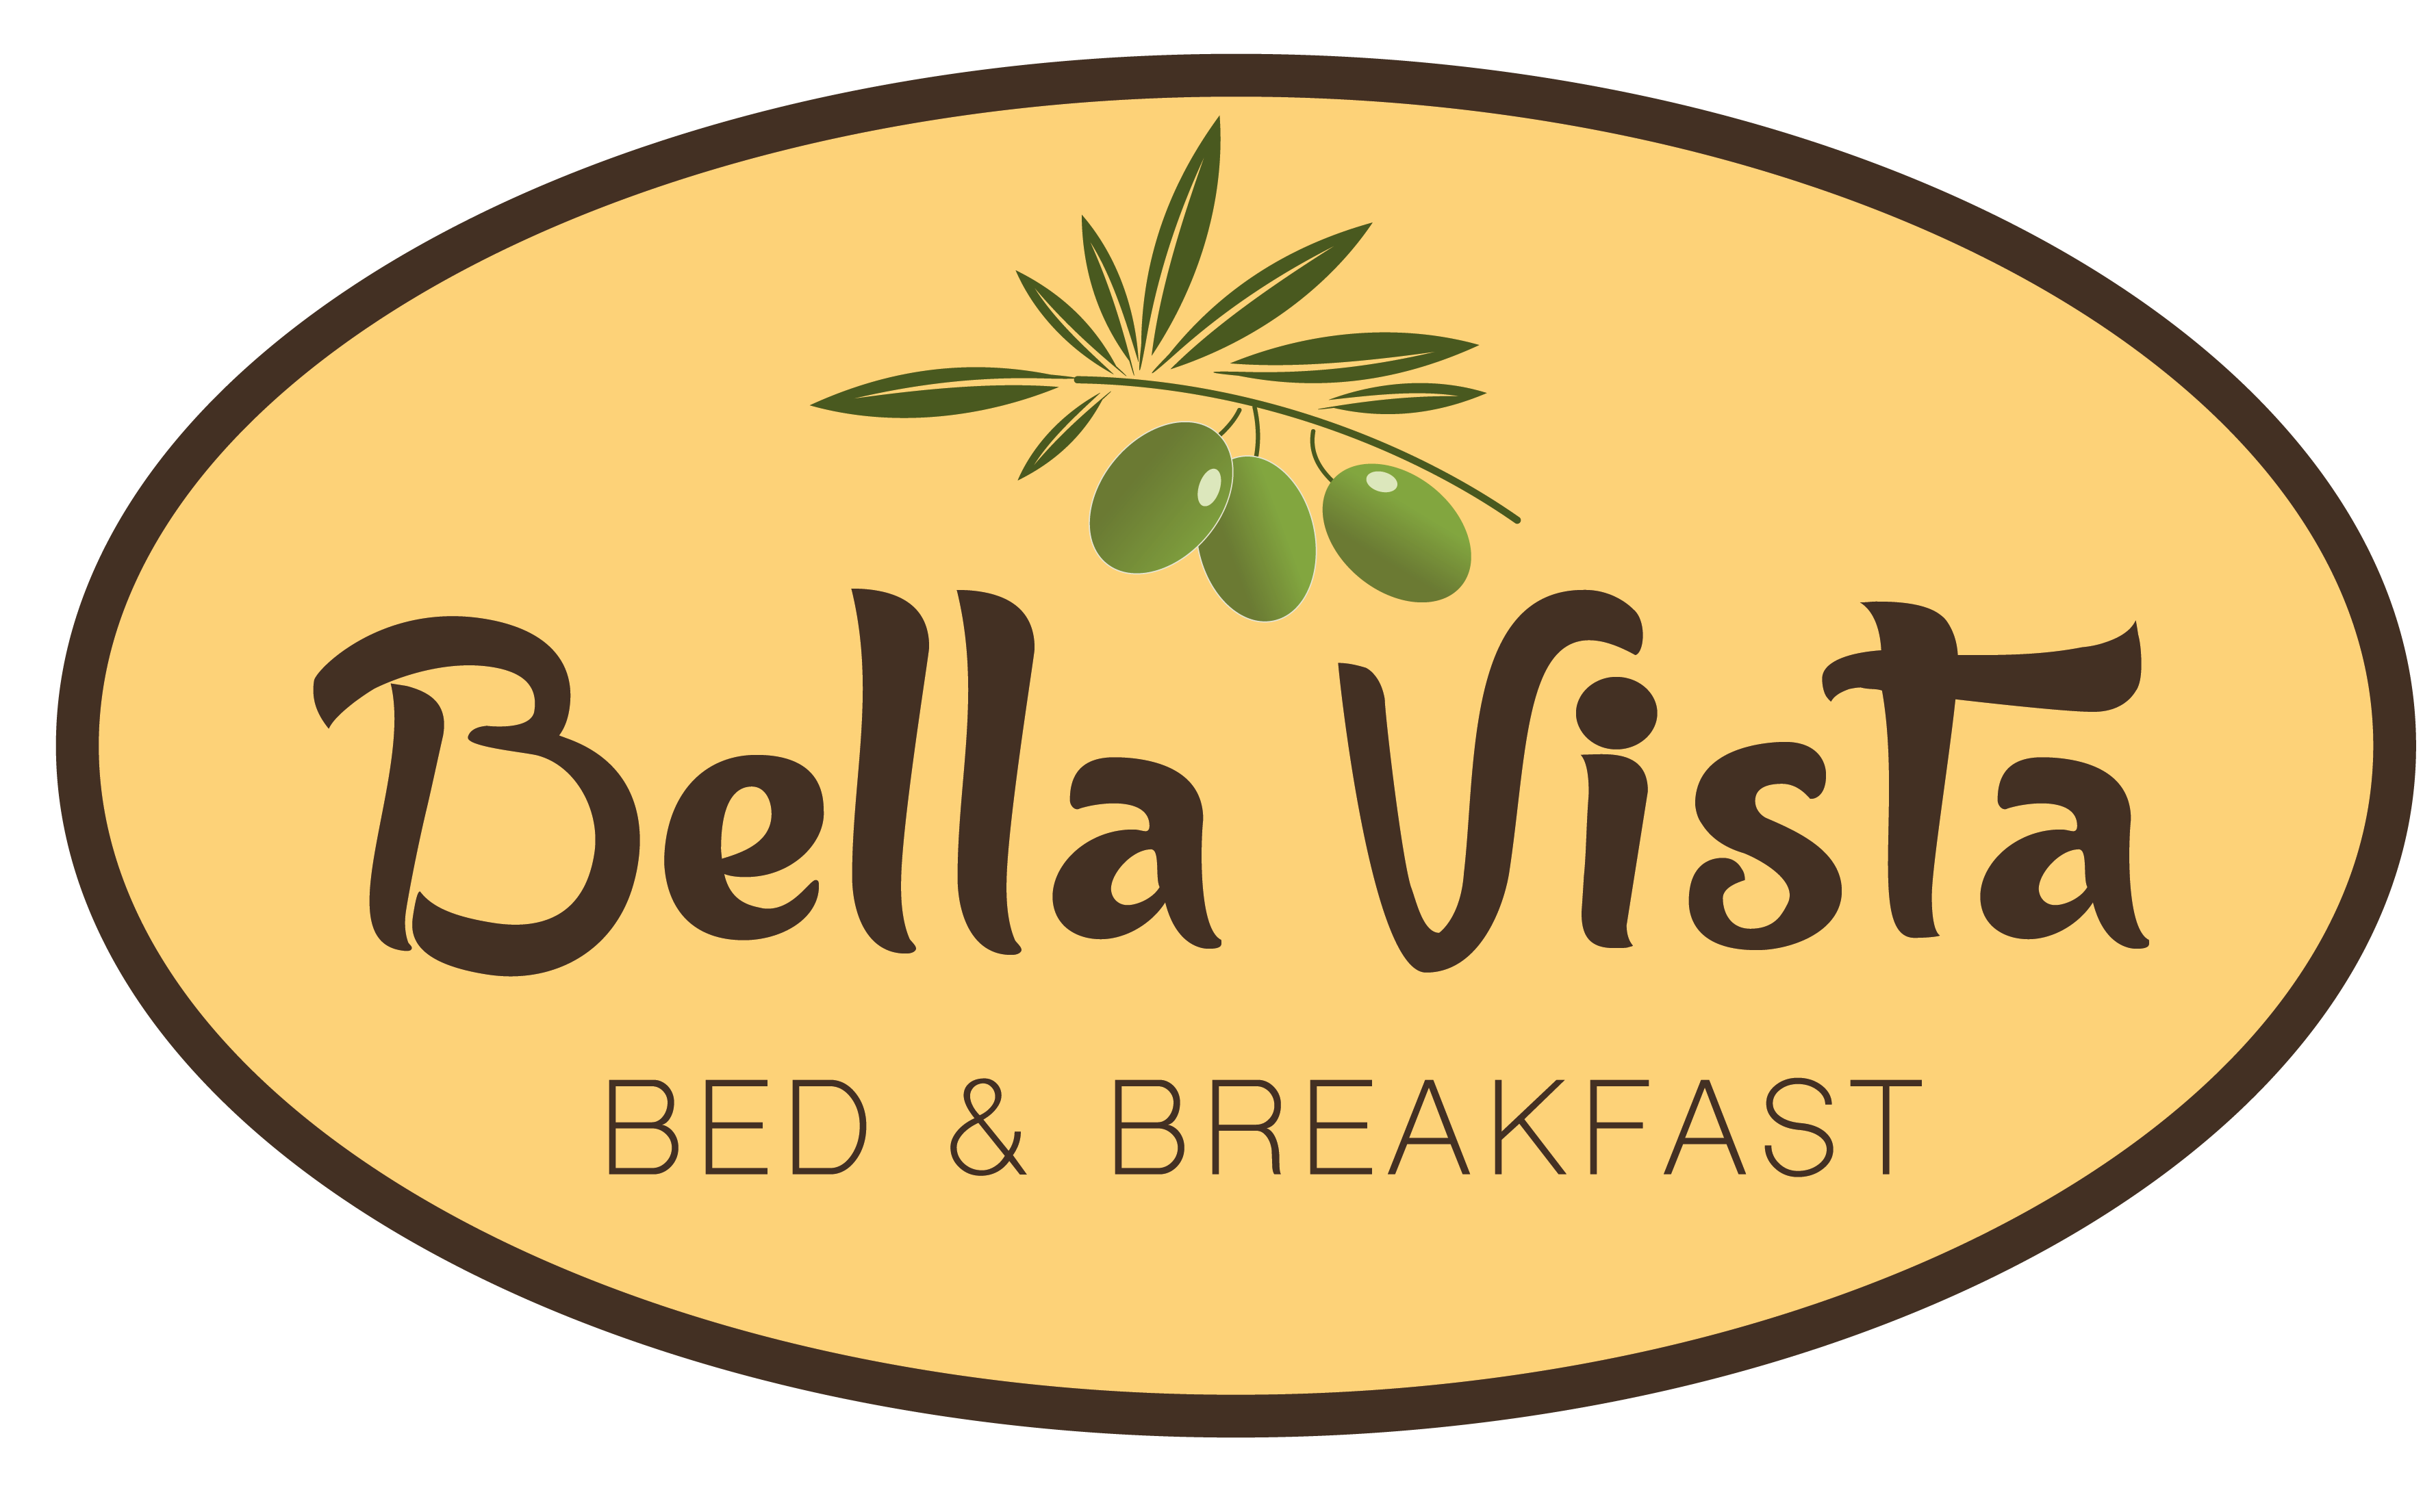 Benvenuti al Bella Vista